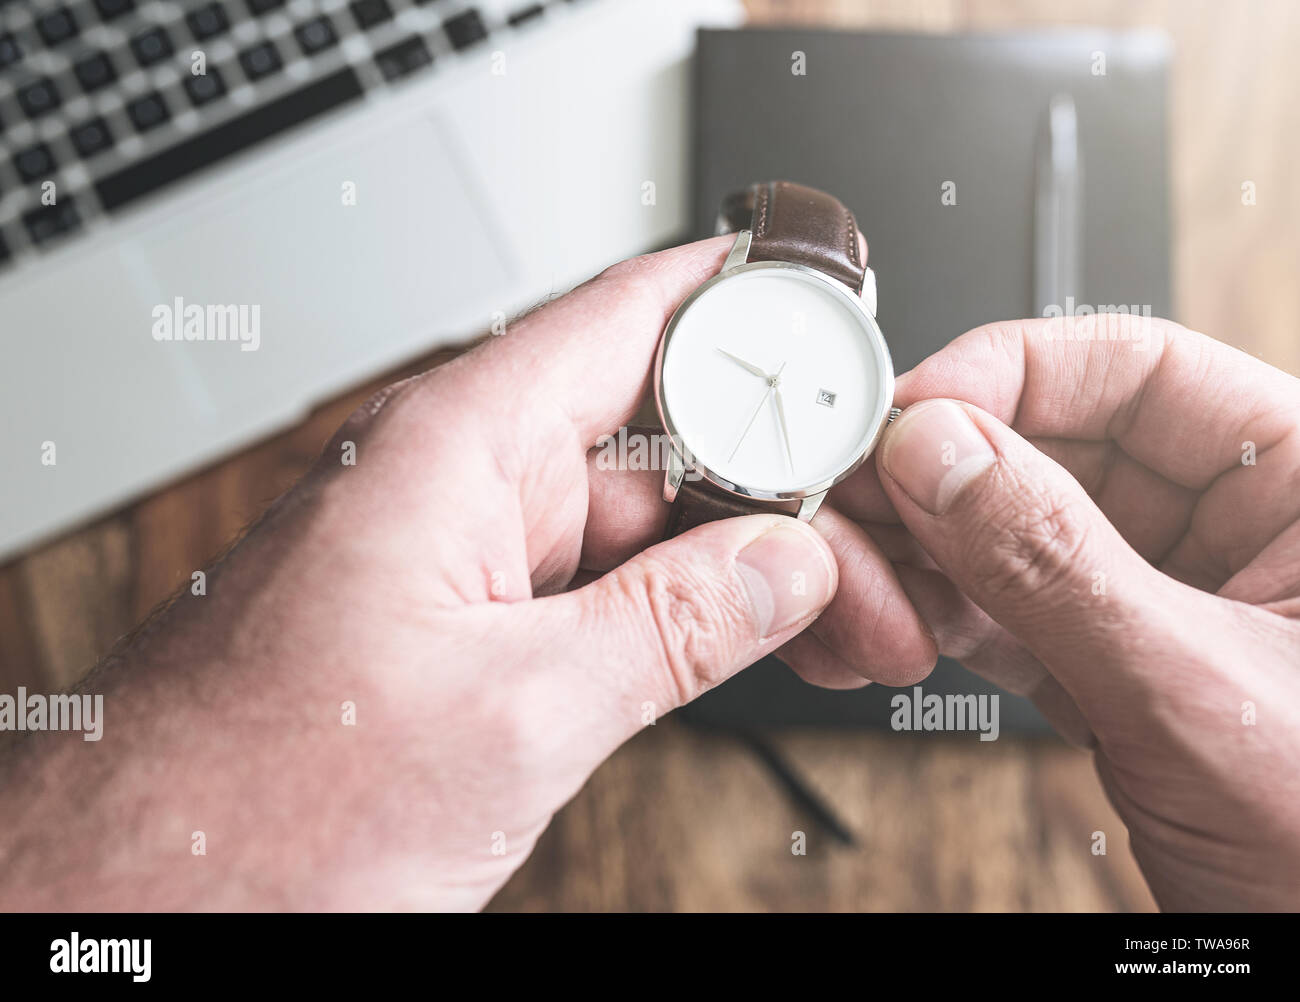 Der Mensch seine Armbanduhr gegen Laptop und persönlichen Organizer auf hölzernen Schreibtisch einstellen Stockfoto